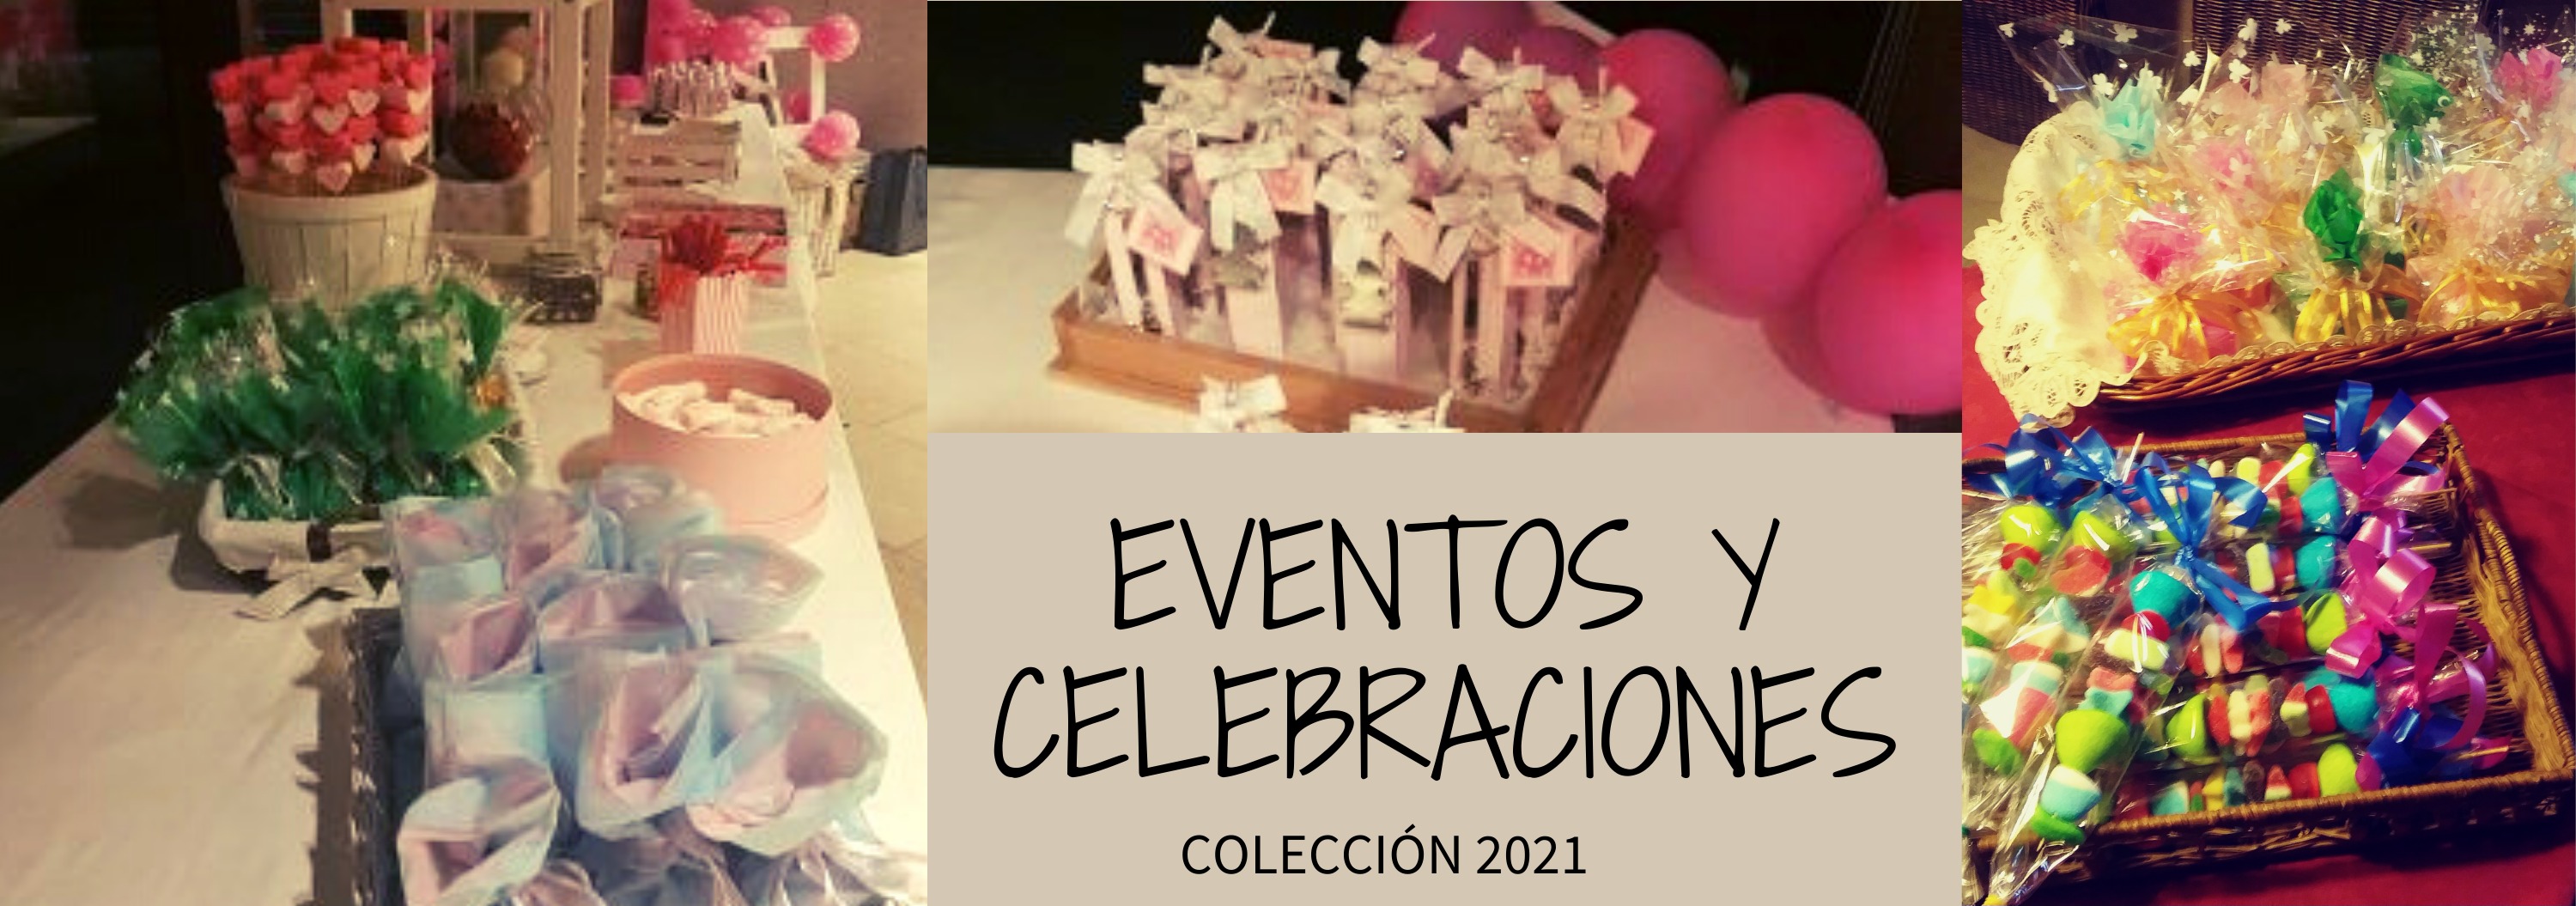 Eventos y Celebraciones 2021